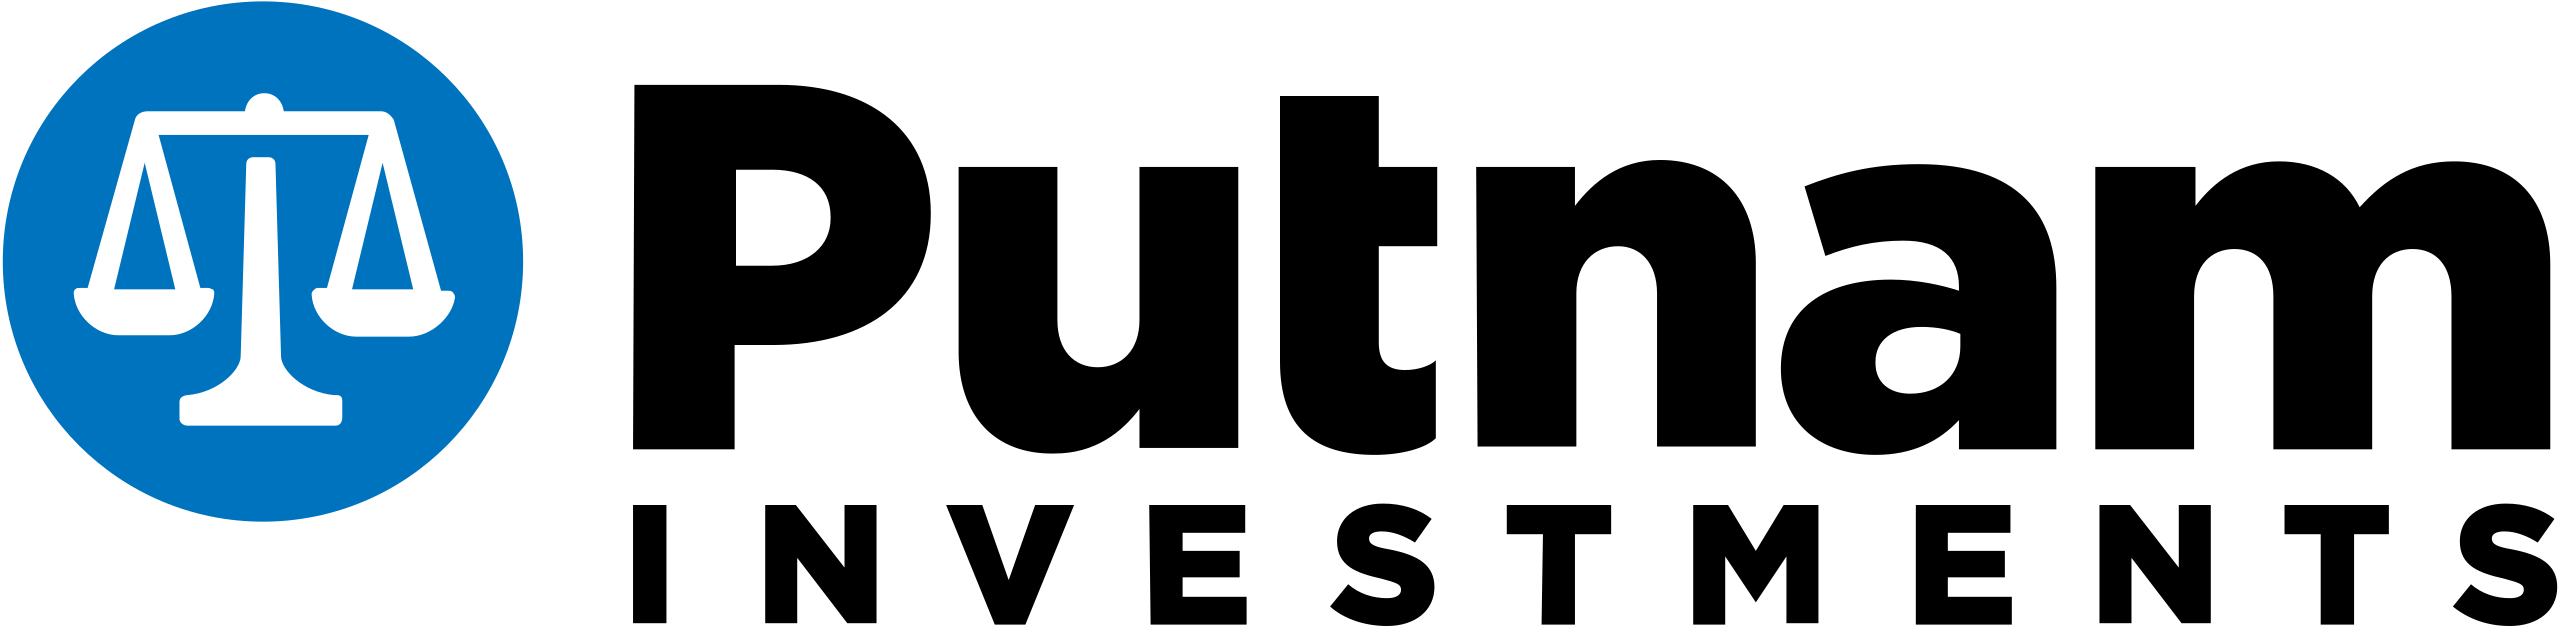 Putnam logo_client